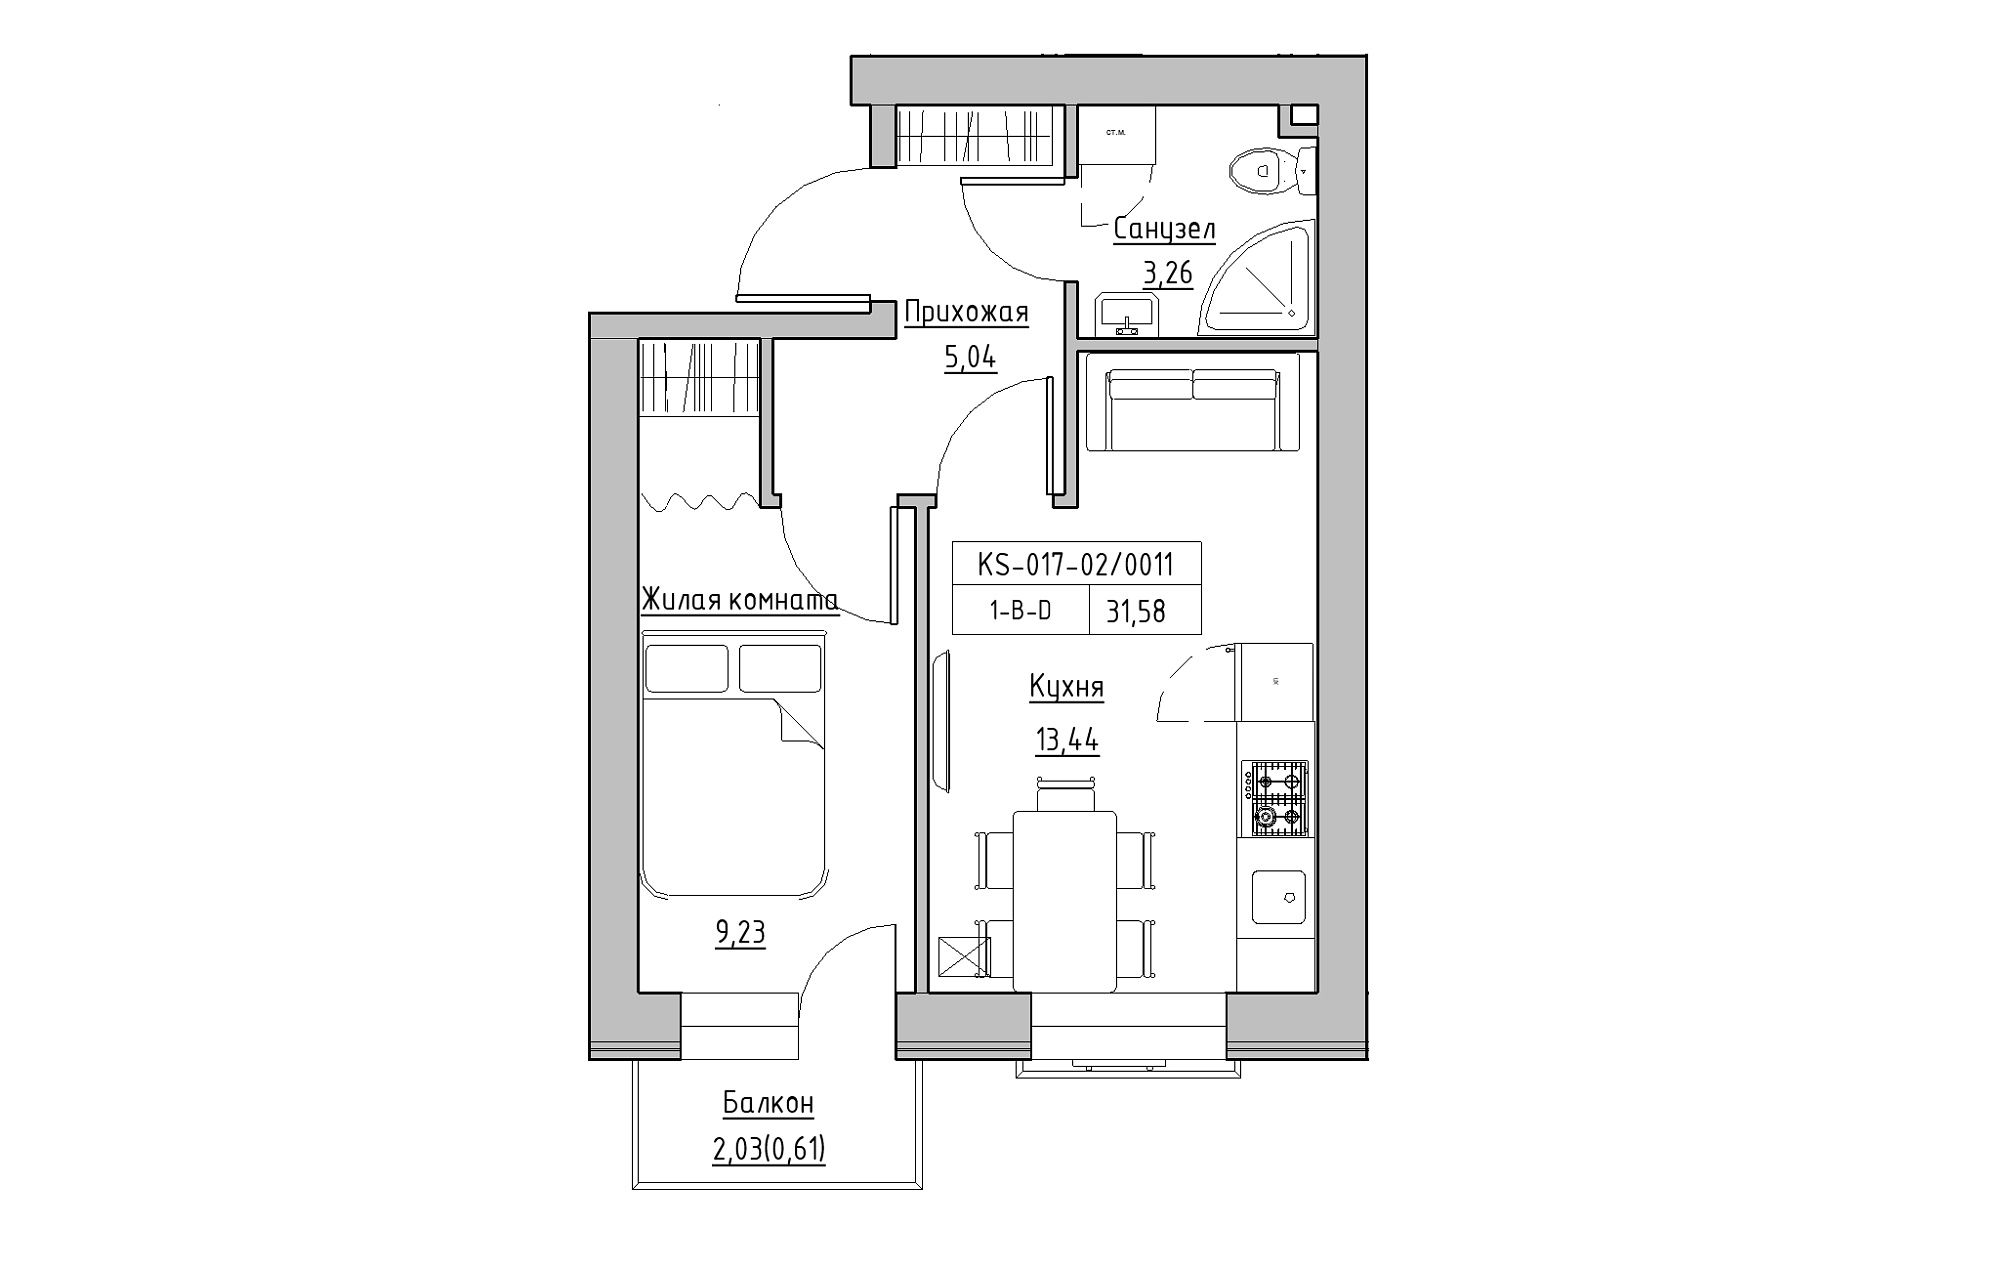 Планування 1-к квартира площею 31.58м2, KS-017-02/0011.